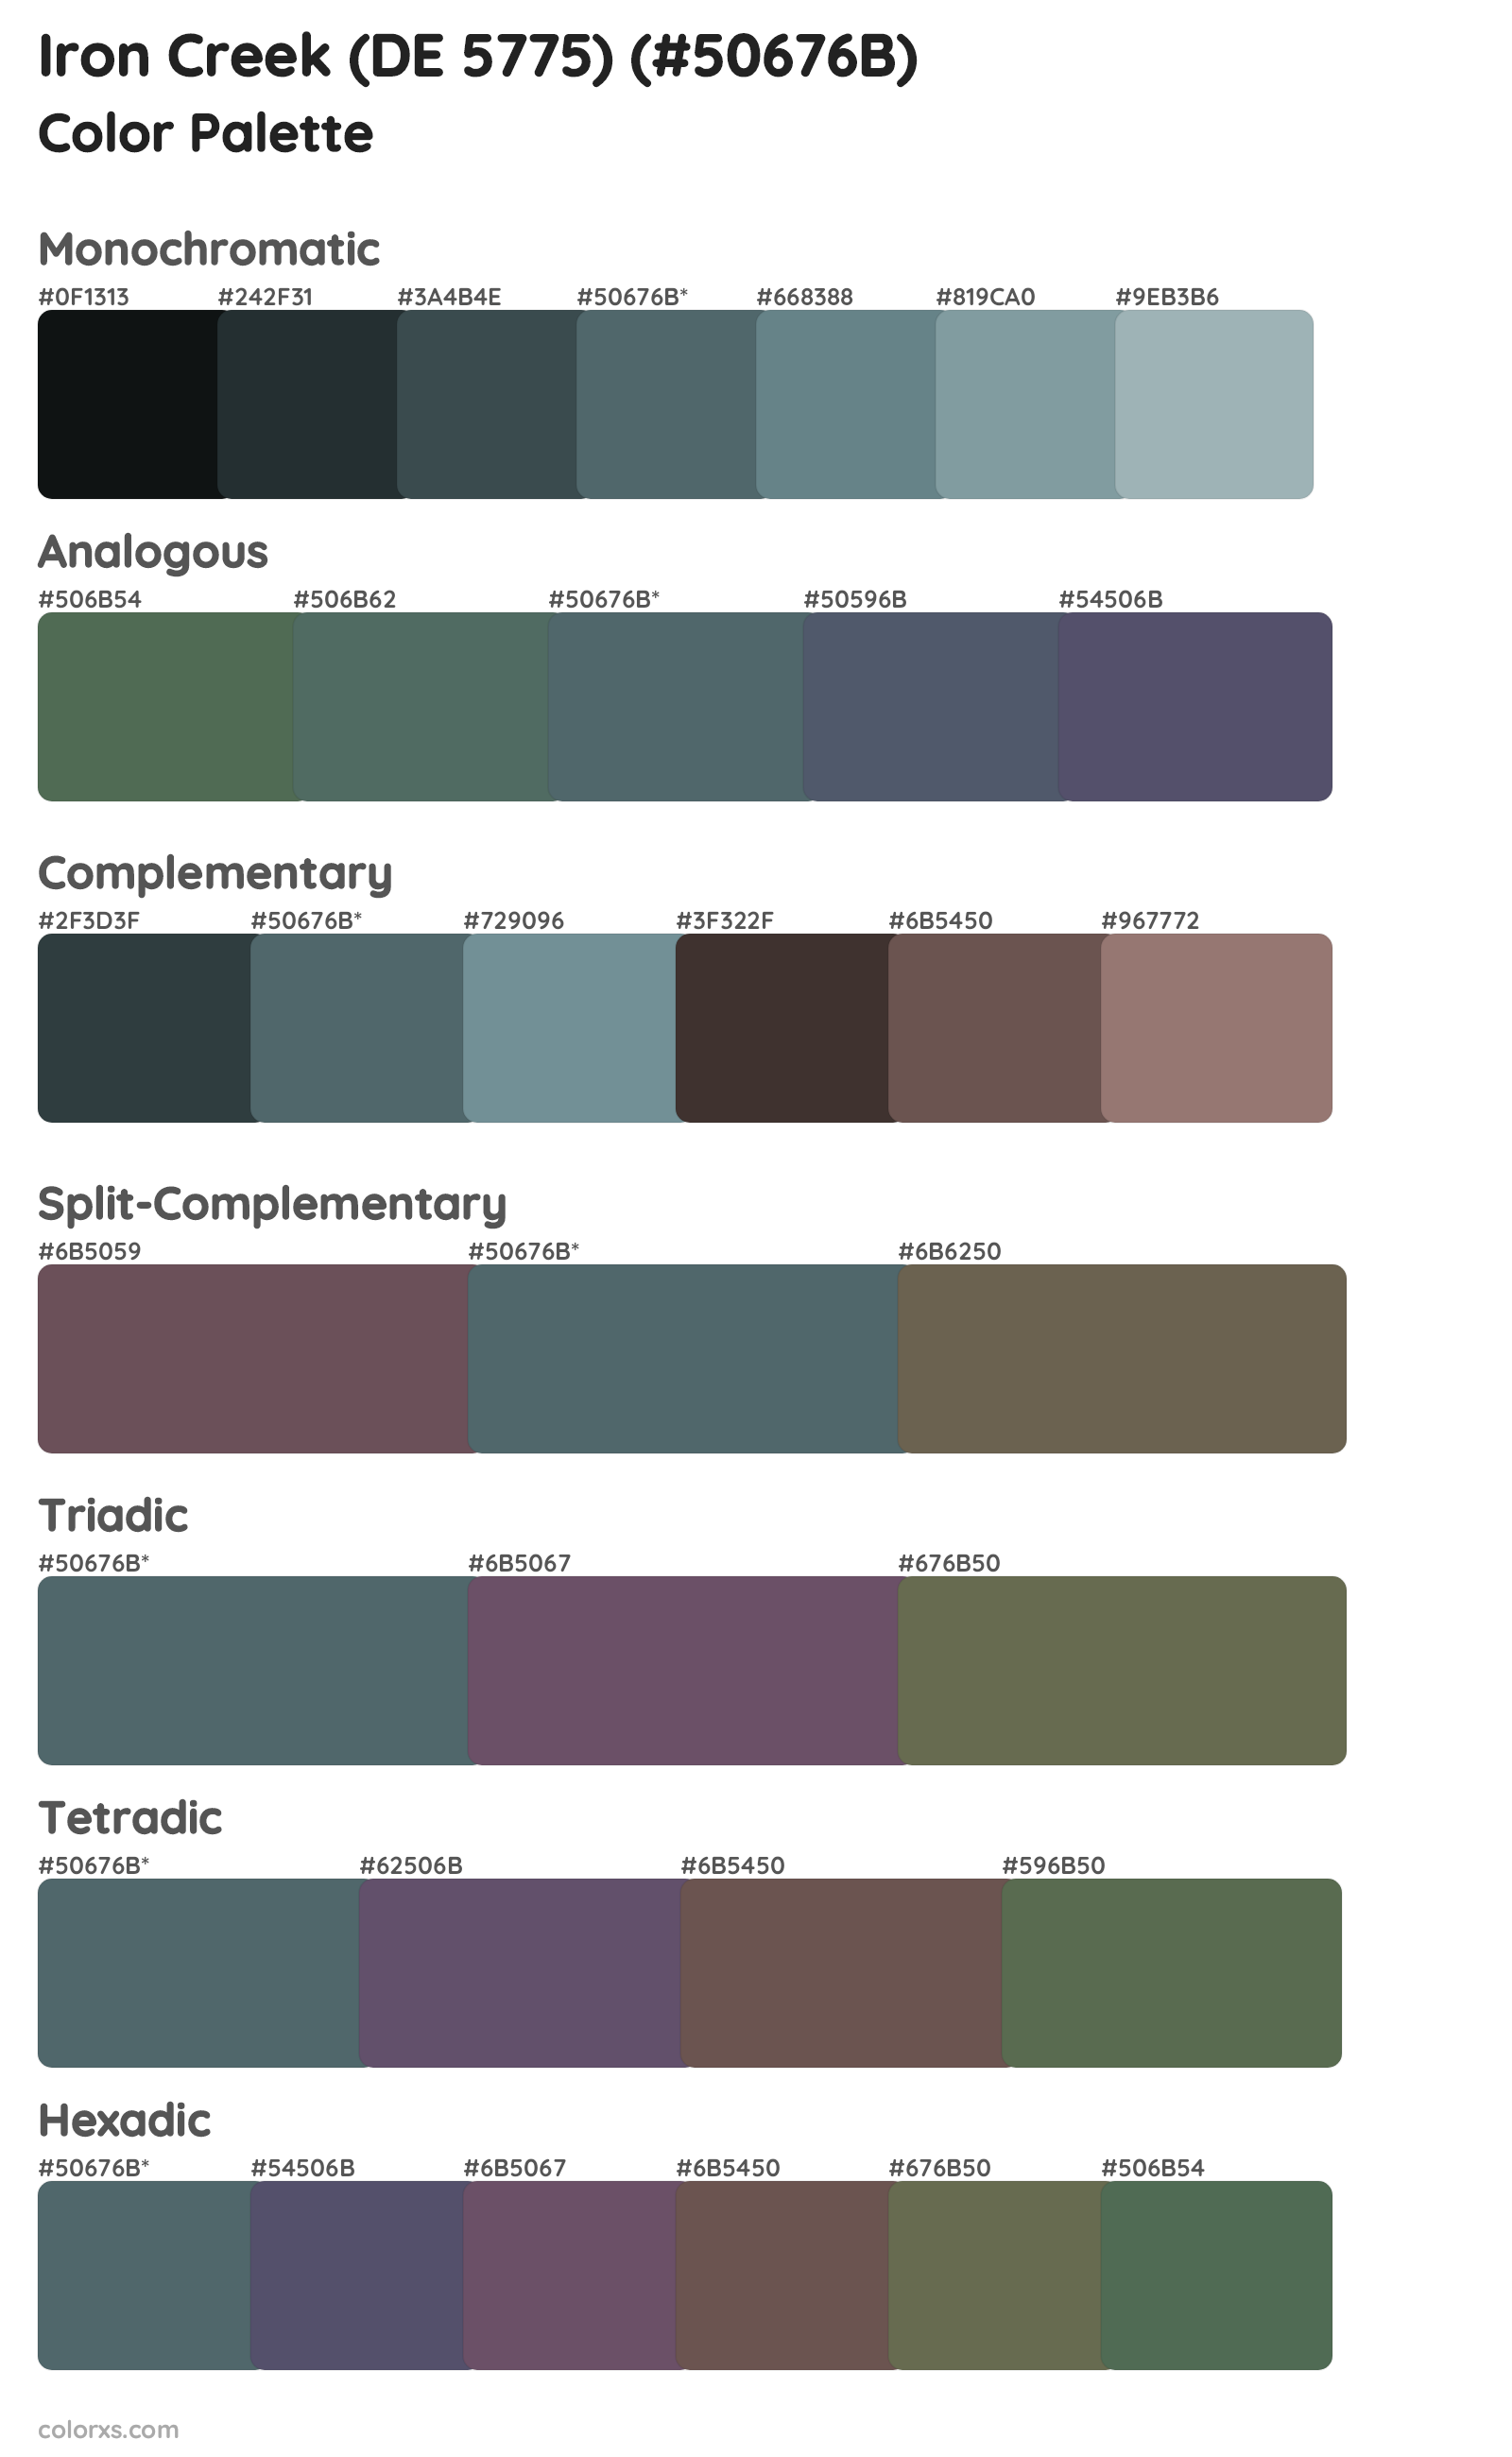 Iron Creek (DE 5775) Color Scheme Palettes